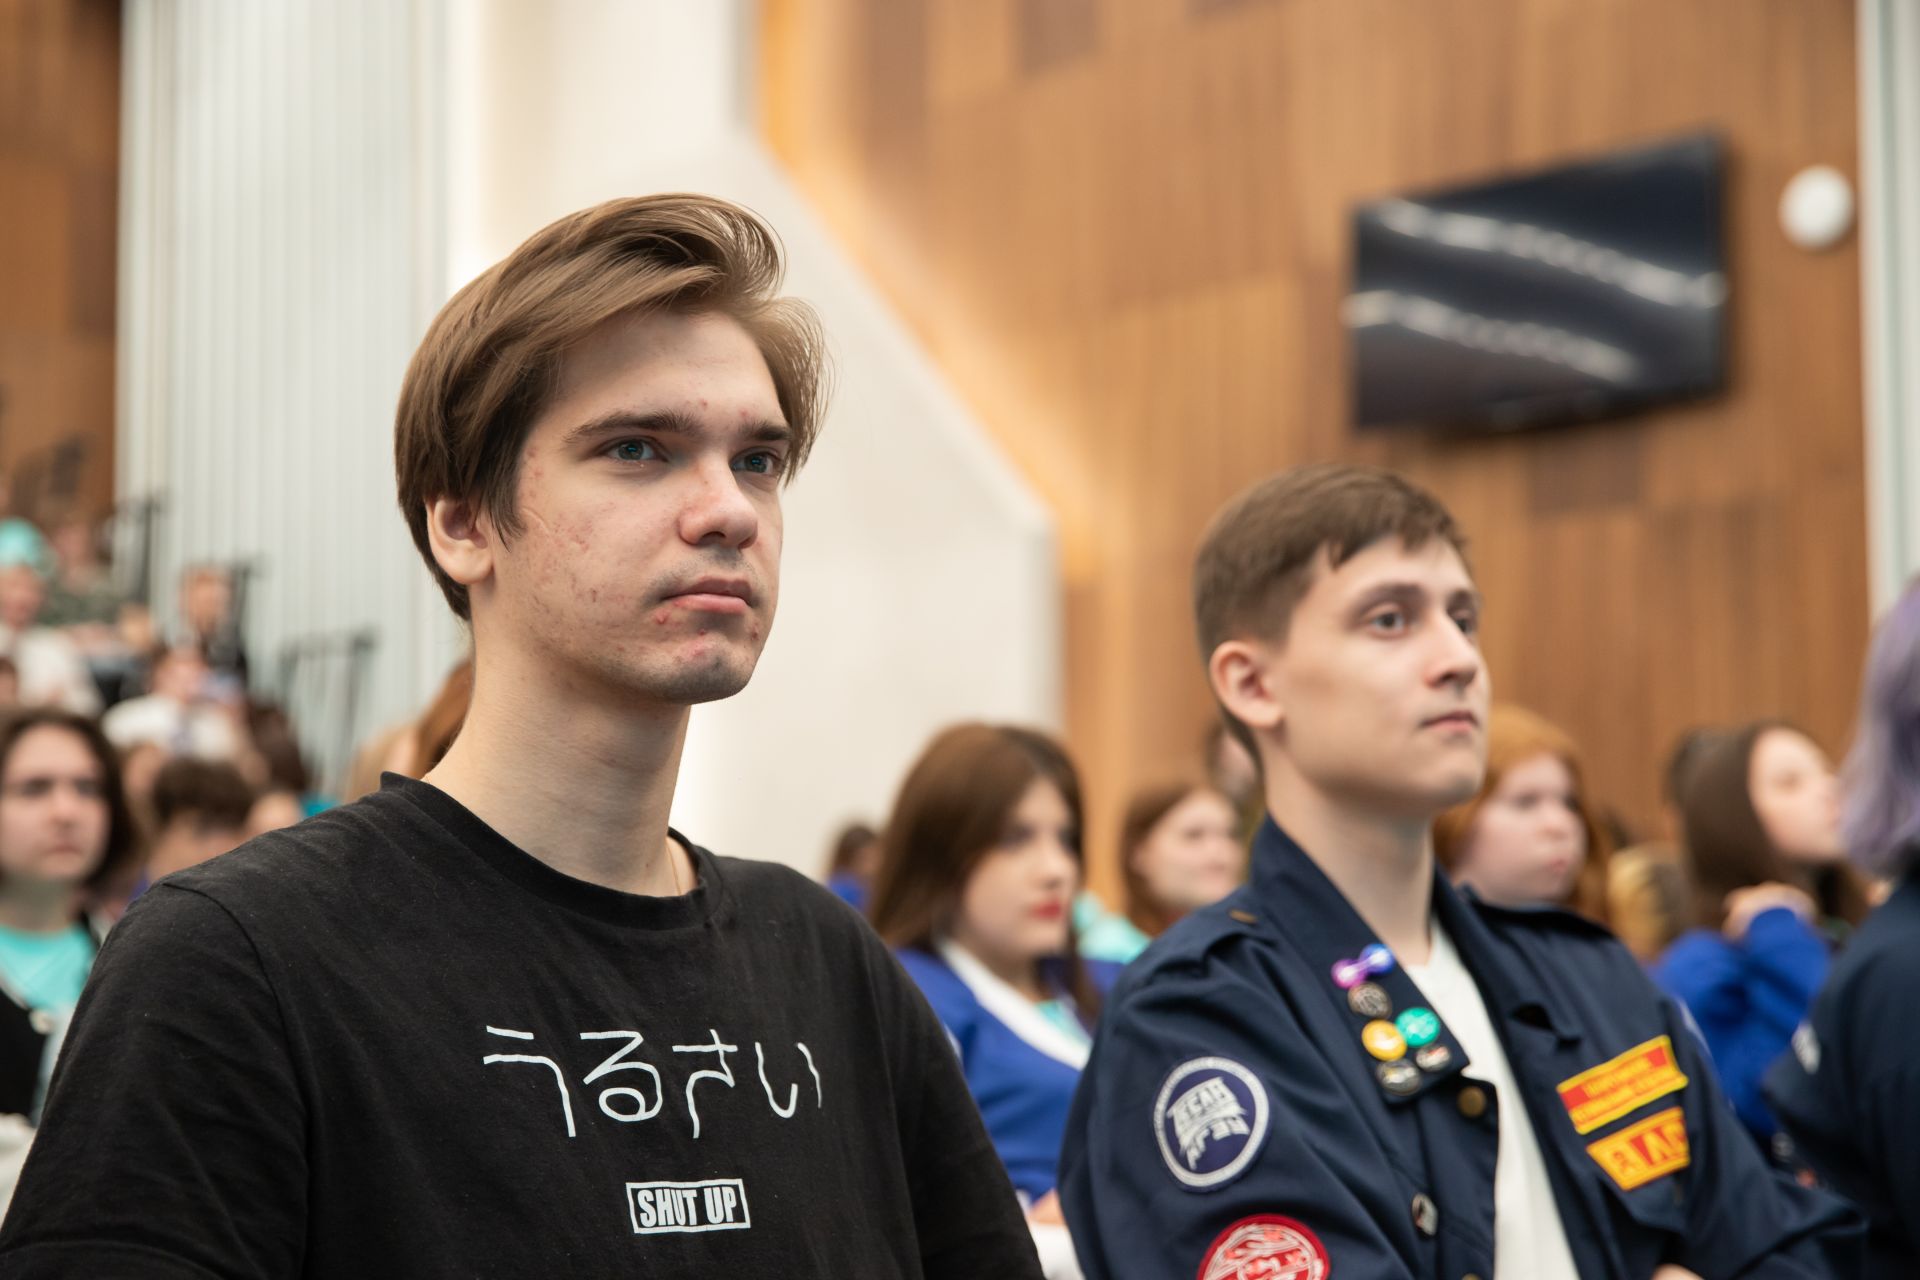 Студентов Татарстана ждут на форуме «Работа молодым»